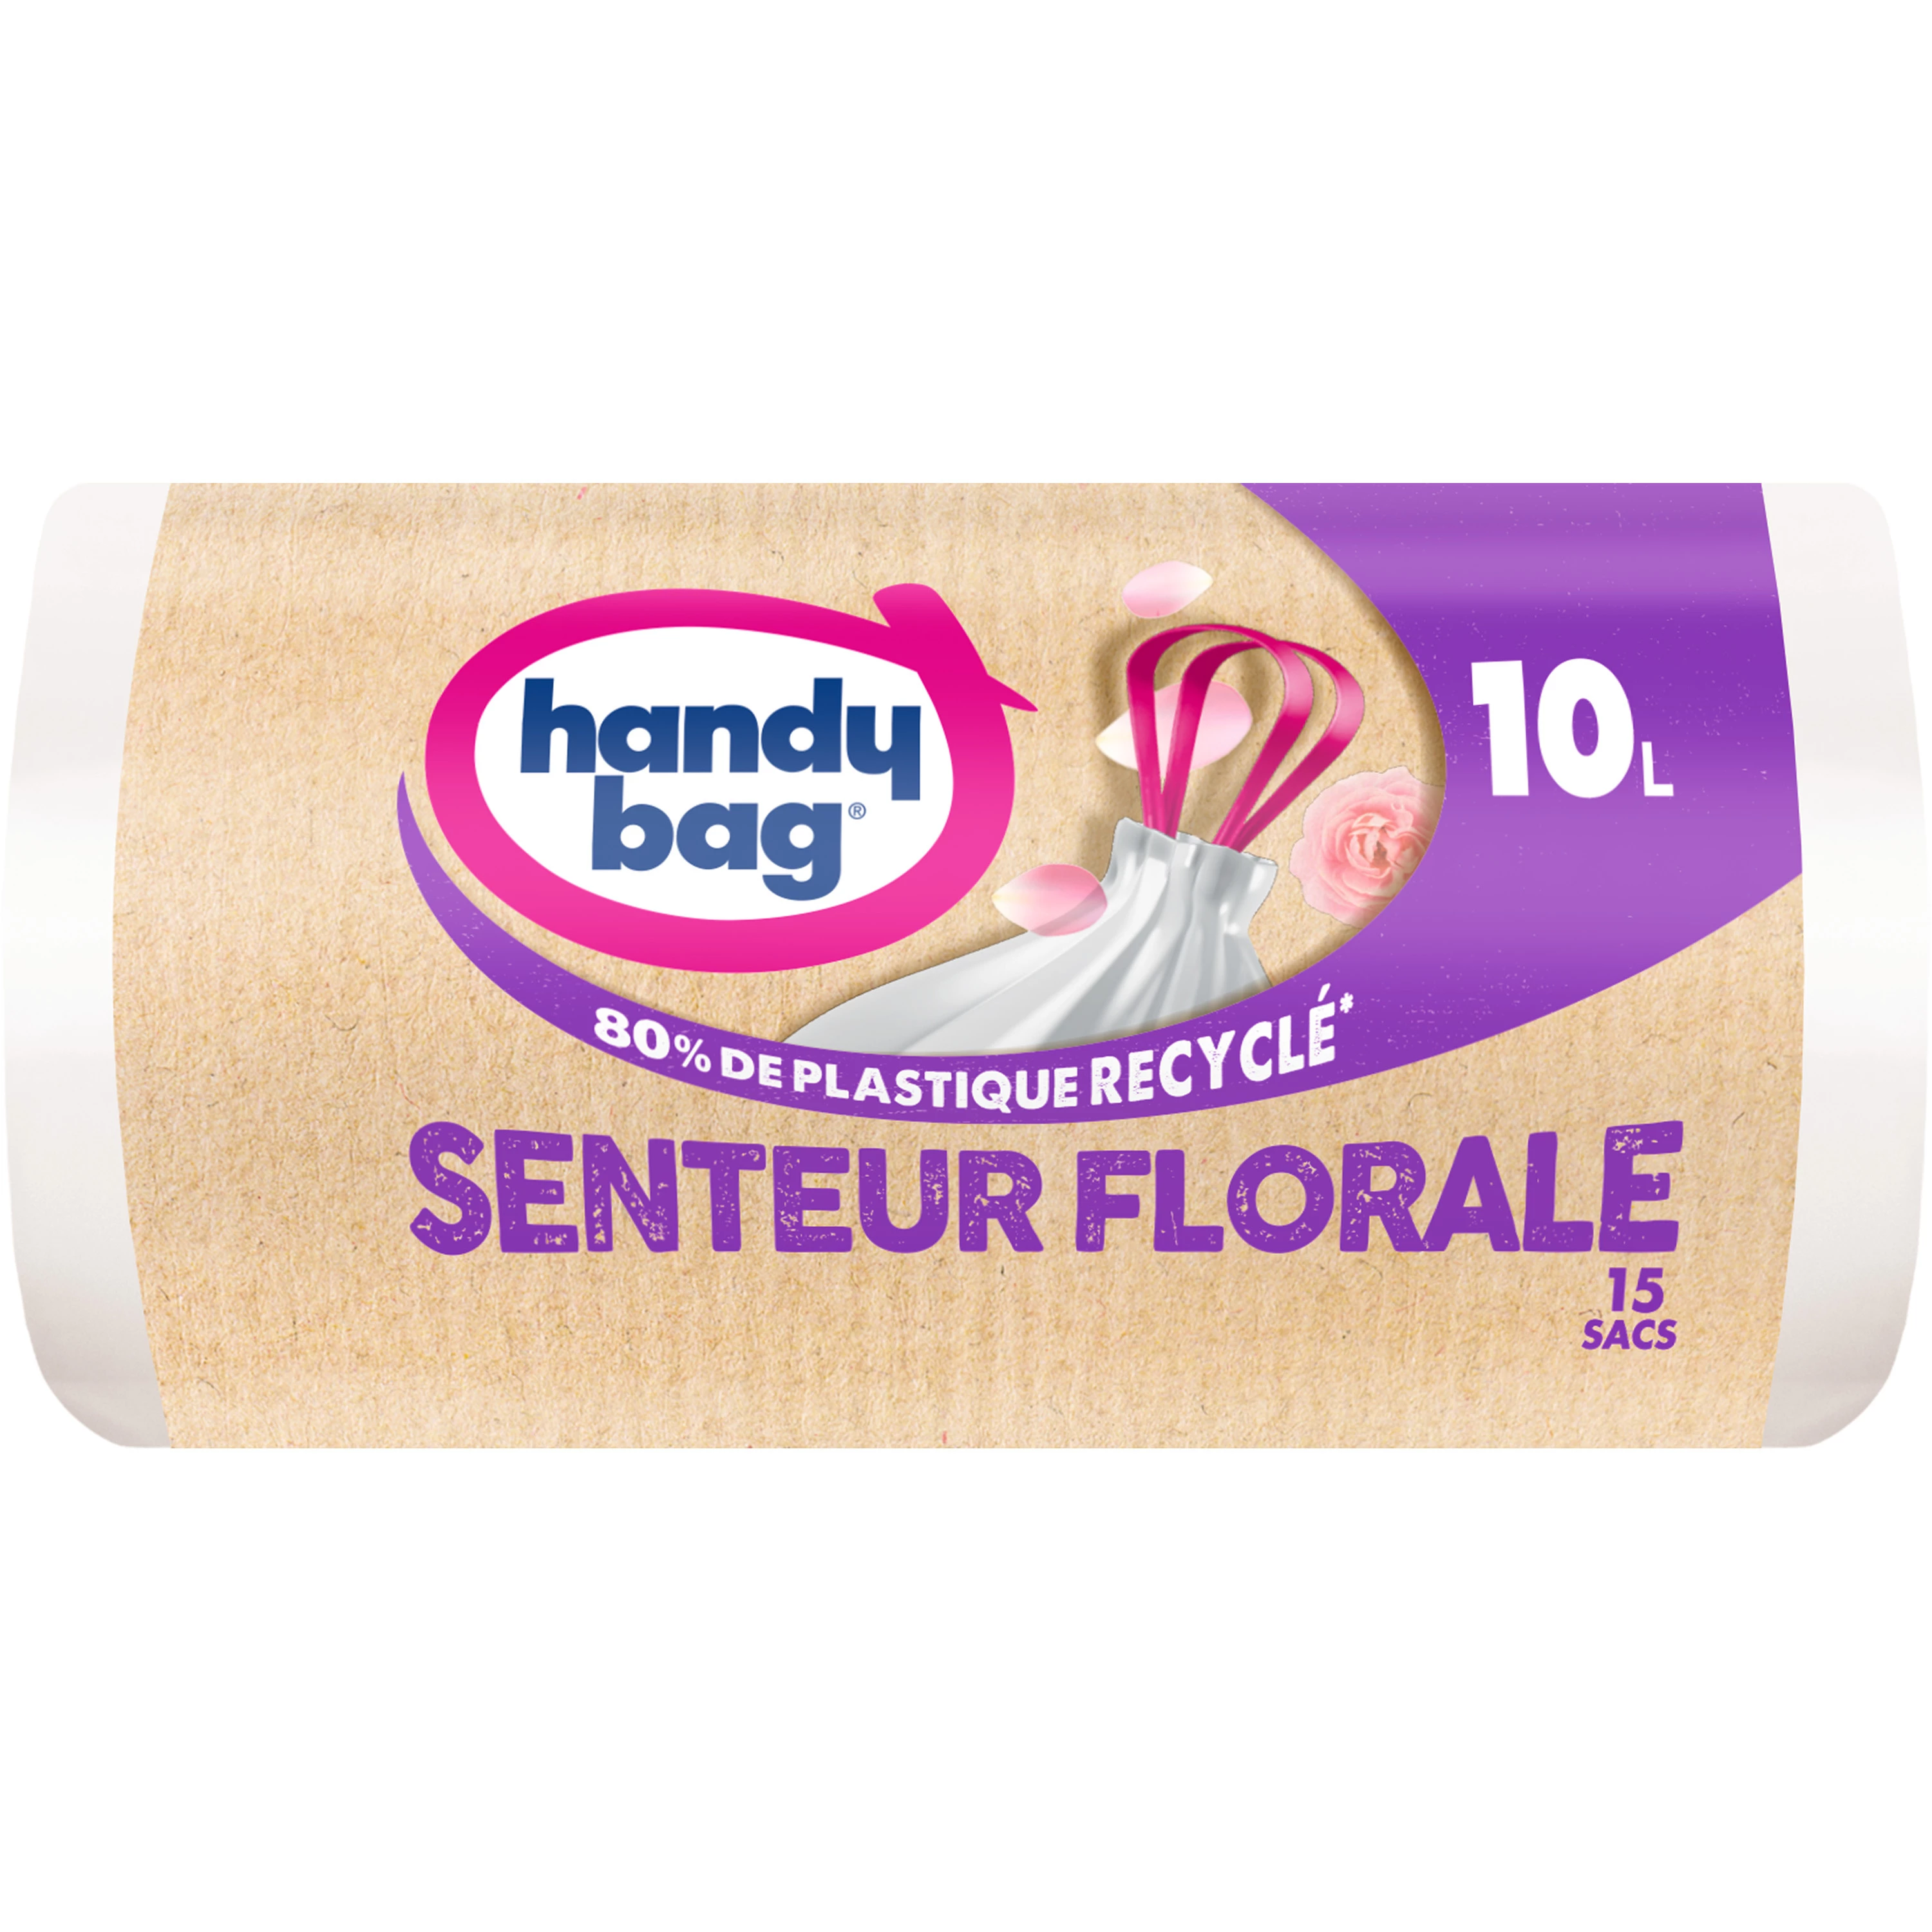 Sac poubelle senteur florale X15 10L - HANDY BAG